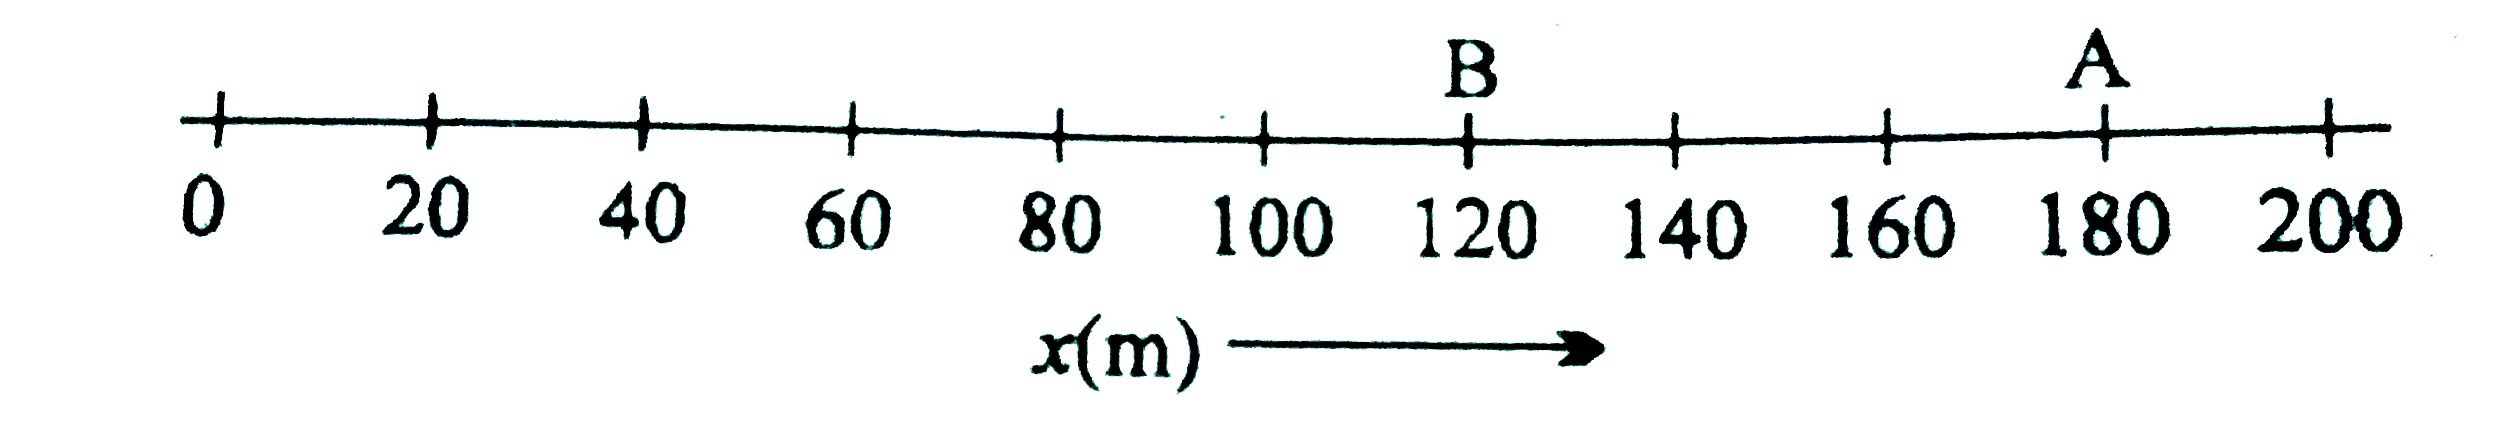 कोई वस्तु एक सरल रेखा में गतिमान है। वस्तु बिंदु O से चलकर 9 सेकंड में बिंदु A तक पहुँचती है। तत्पश्चात 6 सेकंड में बिंदु B पर वापस आ जाती है। वस्तु के औसत वेग और चाल गणना कीजिए जबकि -   (a ) वस्तु O से A तक जाती है। (b ) वस्तु O से A तक जाकर पुनः B पर वापस आ जाती है।